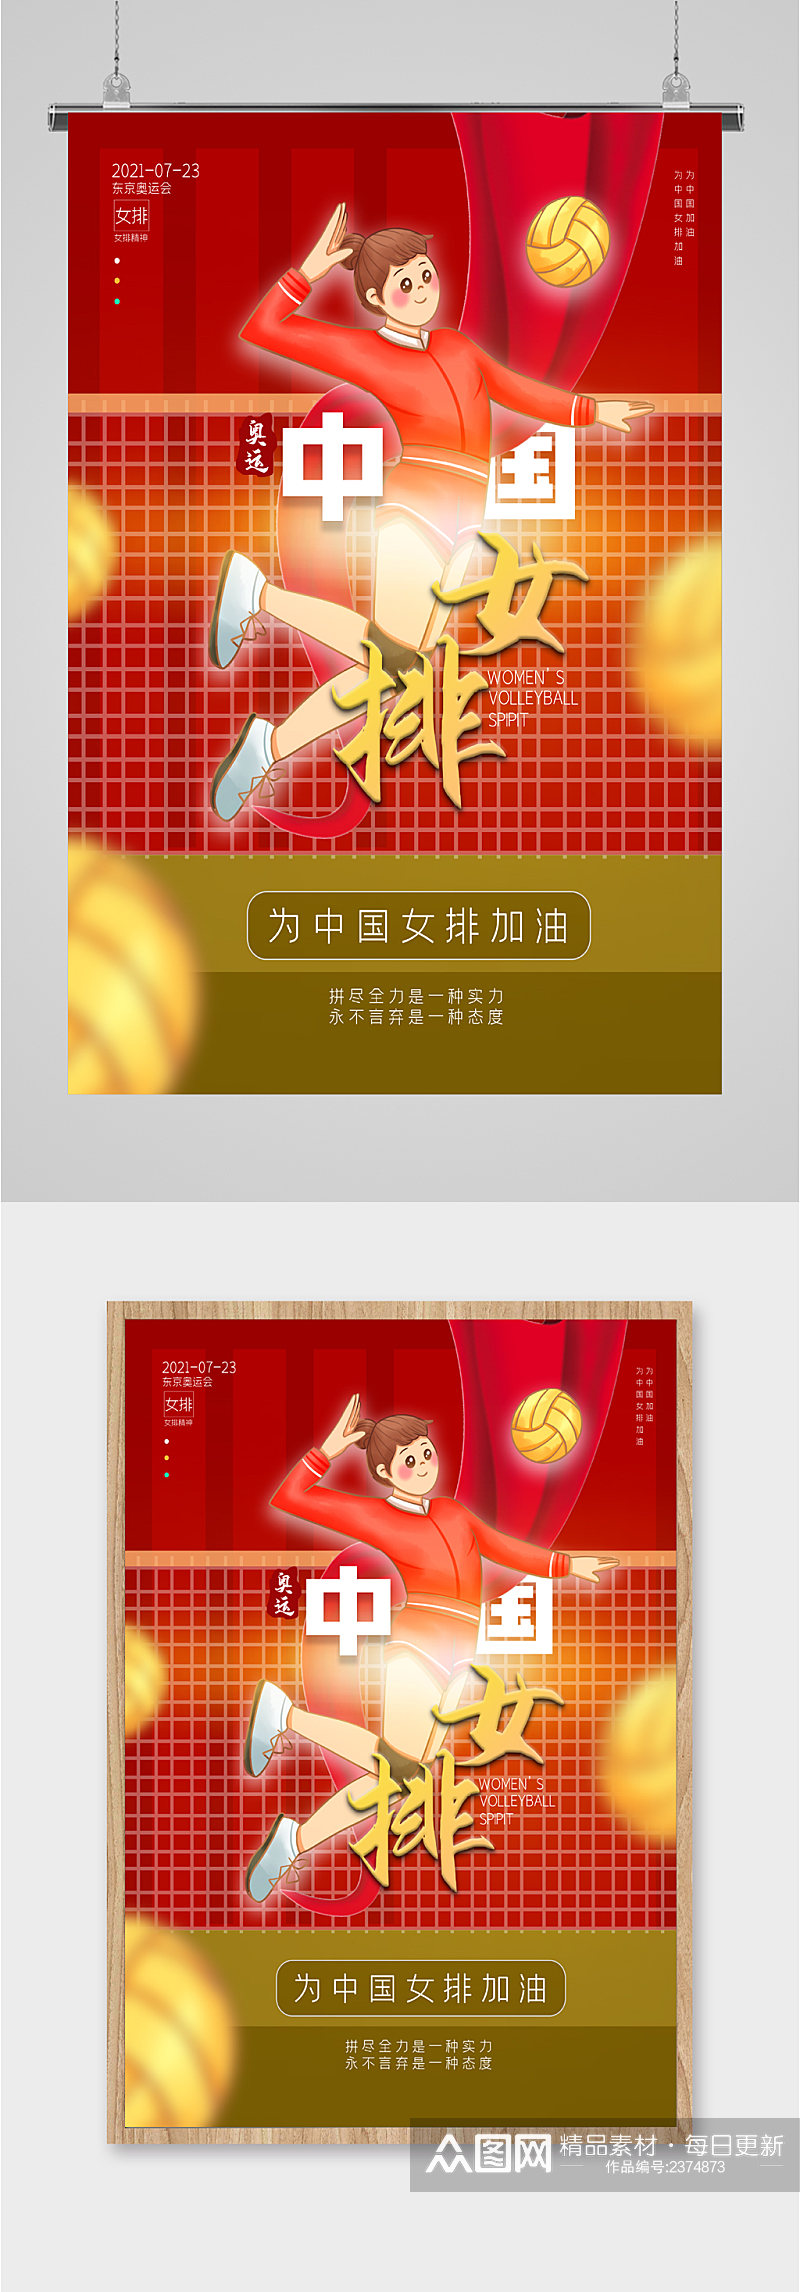 中国女排卡通人物海报素材